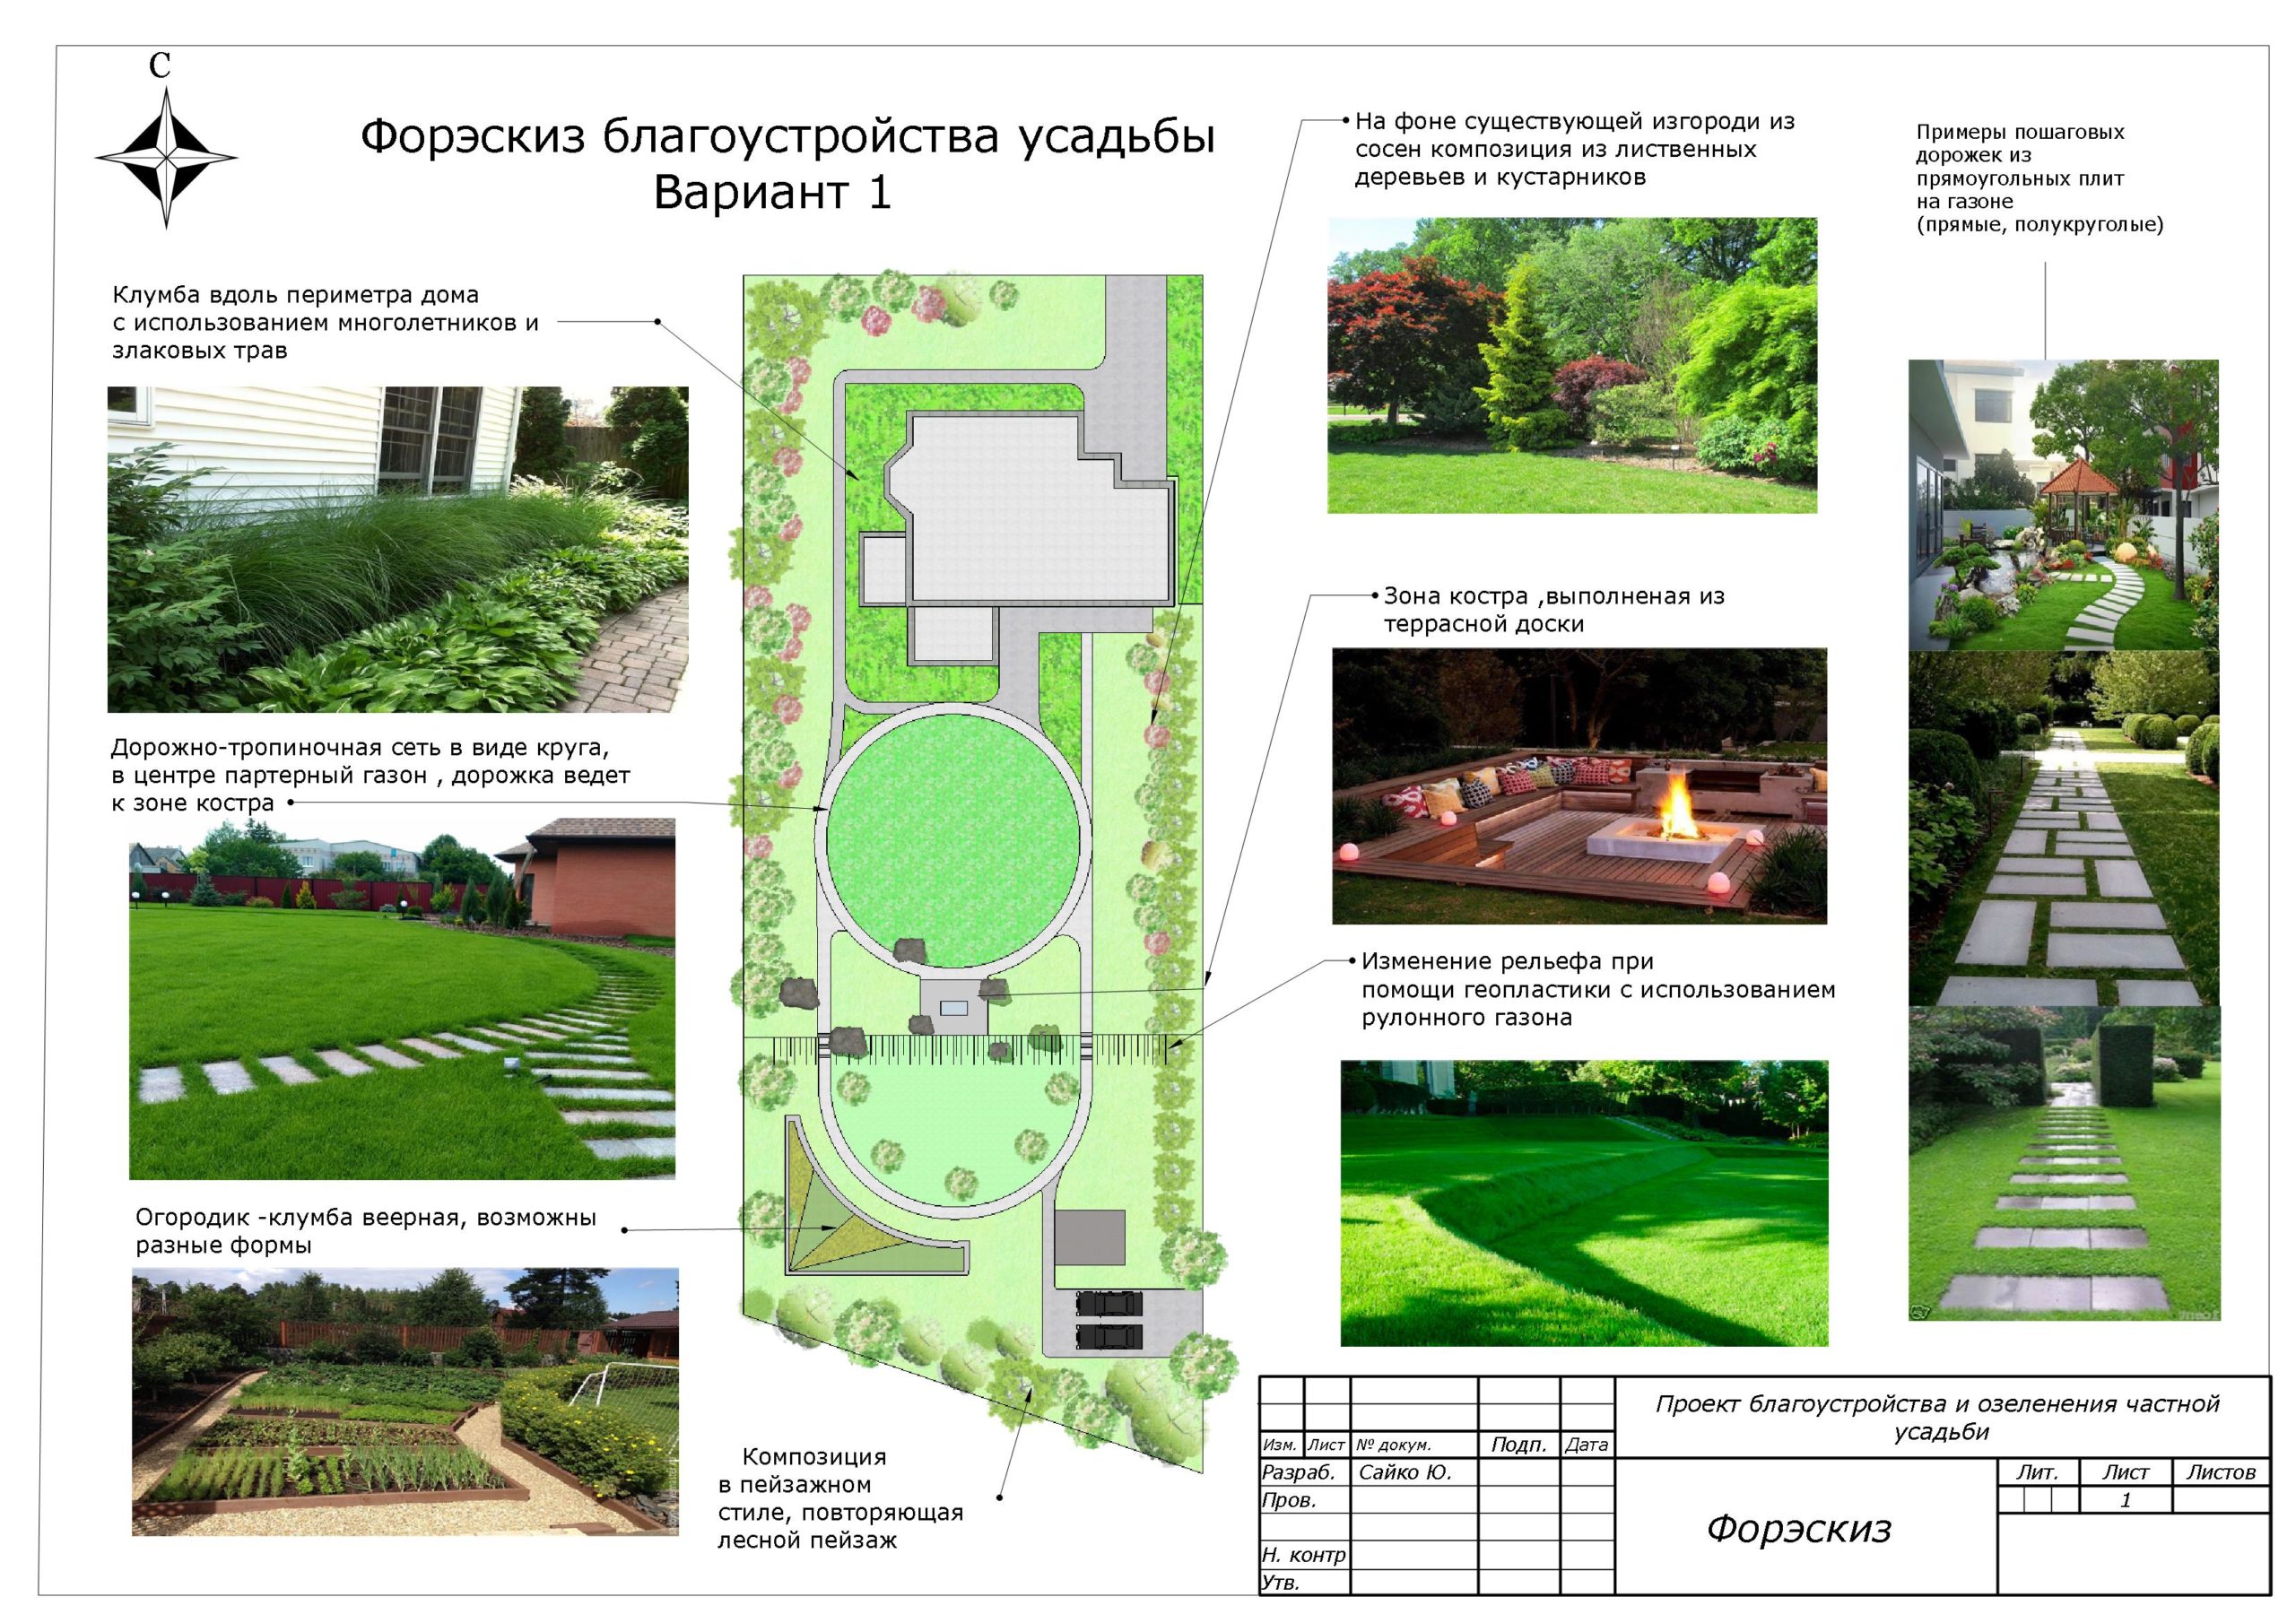 эскизны проект озеленения сада2